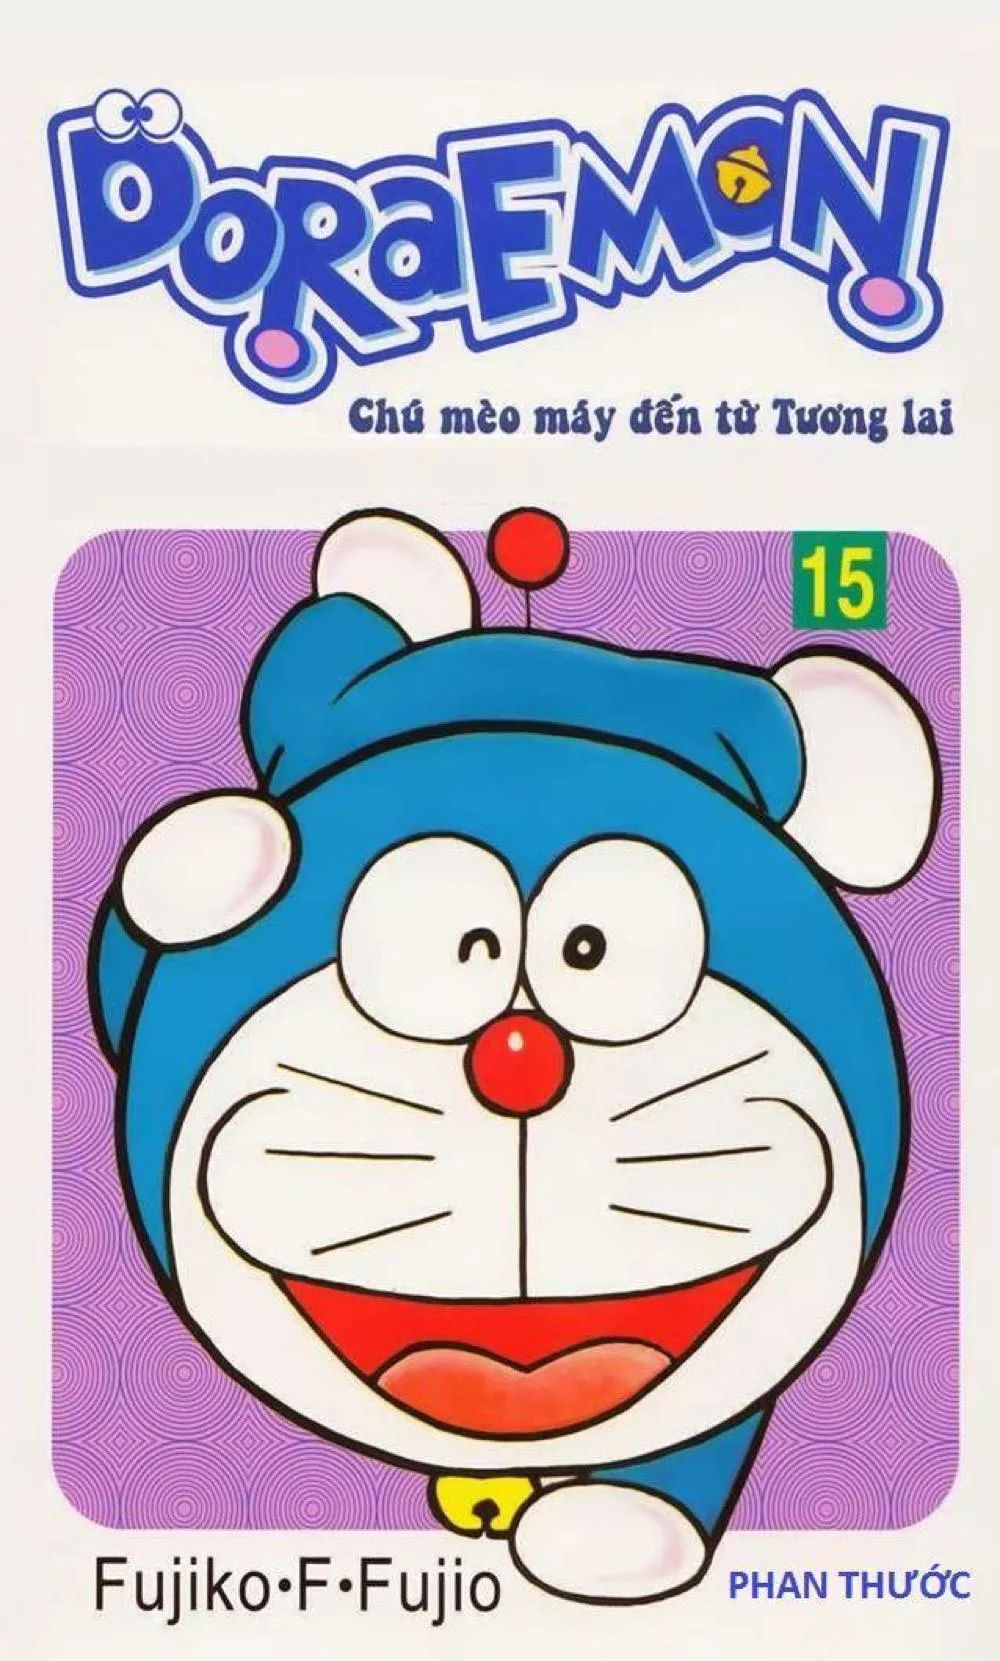 Doraemon - một cái tên quen thuộc với rất nhiều thế hệ trẻ em tại Việt Nam. Hãy cùng xem lại hình ảnh về chú mèo máy thông minh, tốt bụng và những người bạn, và cảm nhận lại những giá trị của tình bạn, sự trẻ trung và sáng tạo.